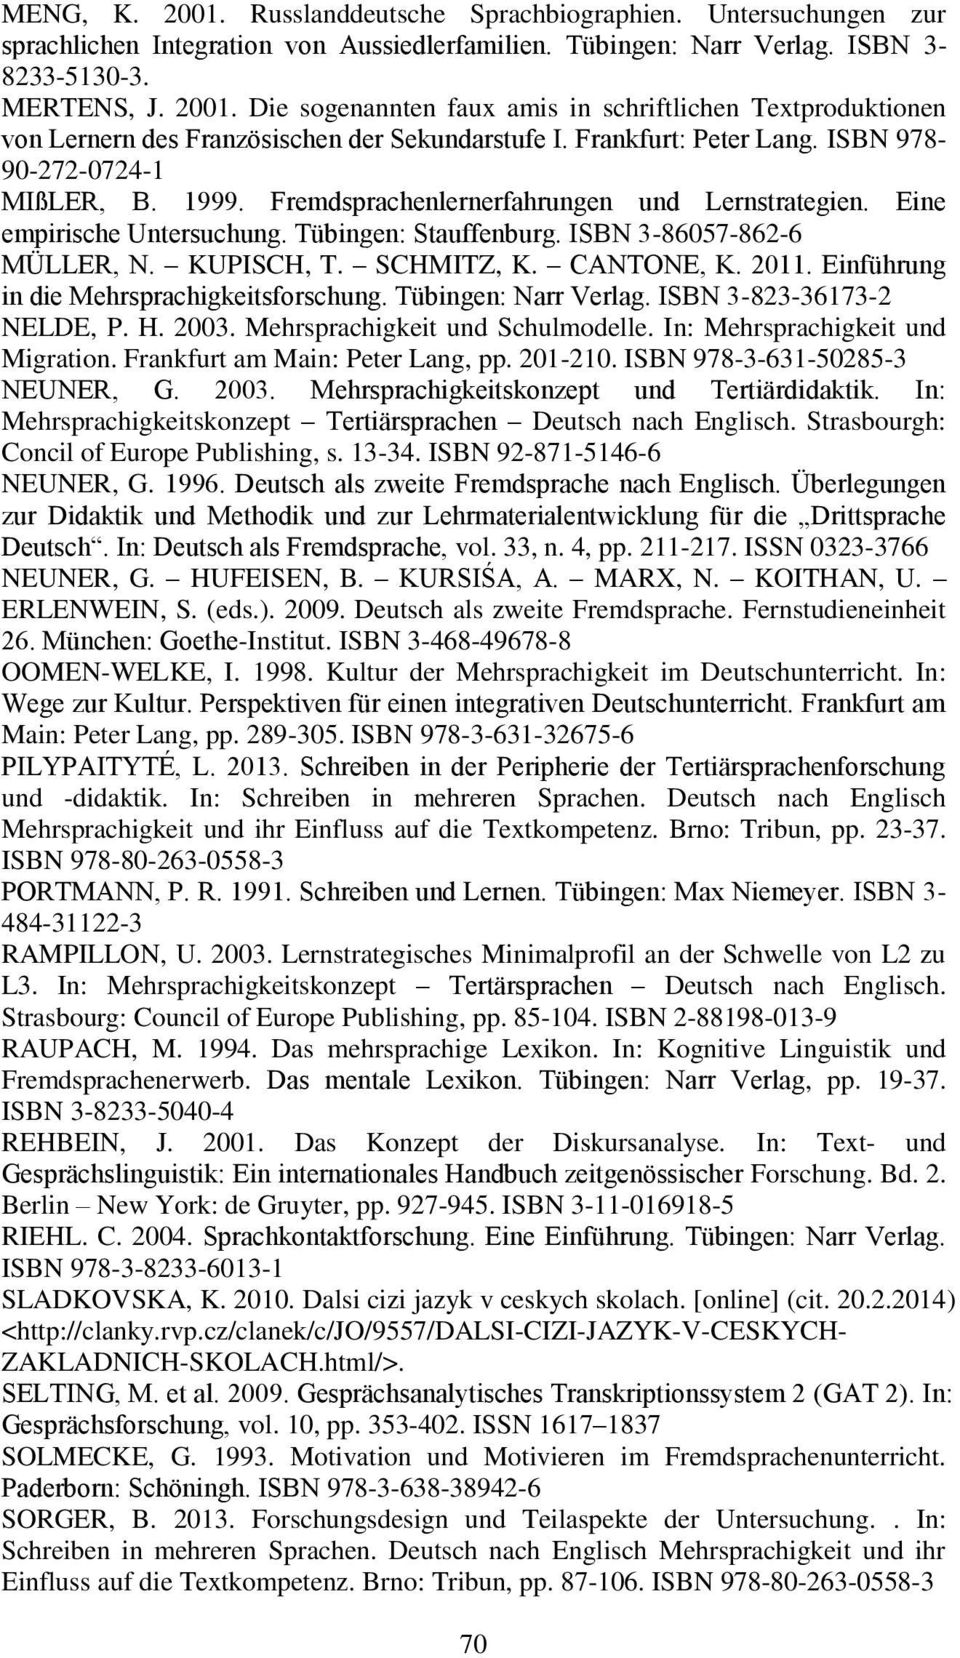 KUPISCH, T. SCHMITZ, K. CANTONE, K. 2011. Einführung in die Mehrsprachigkeitsforschung. Tübingen: Narr Verlag. ISBN 3-823-36173-2 NELDE, P. H. 2003. Mehrsprachigkeit und Schulmodelle.